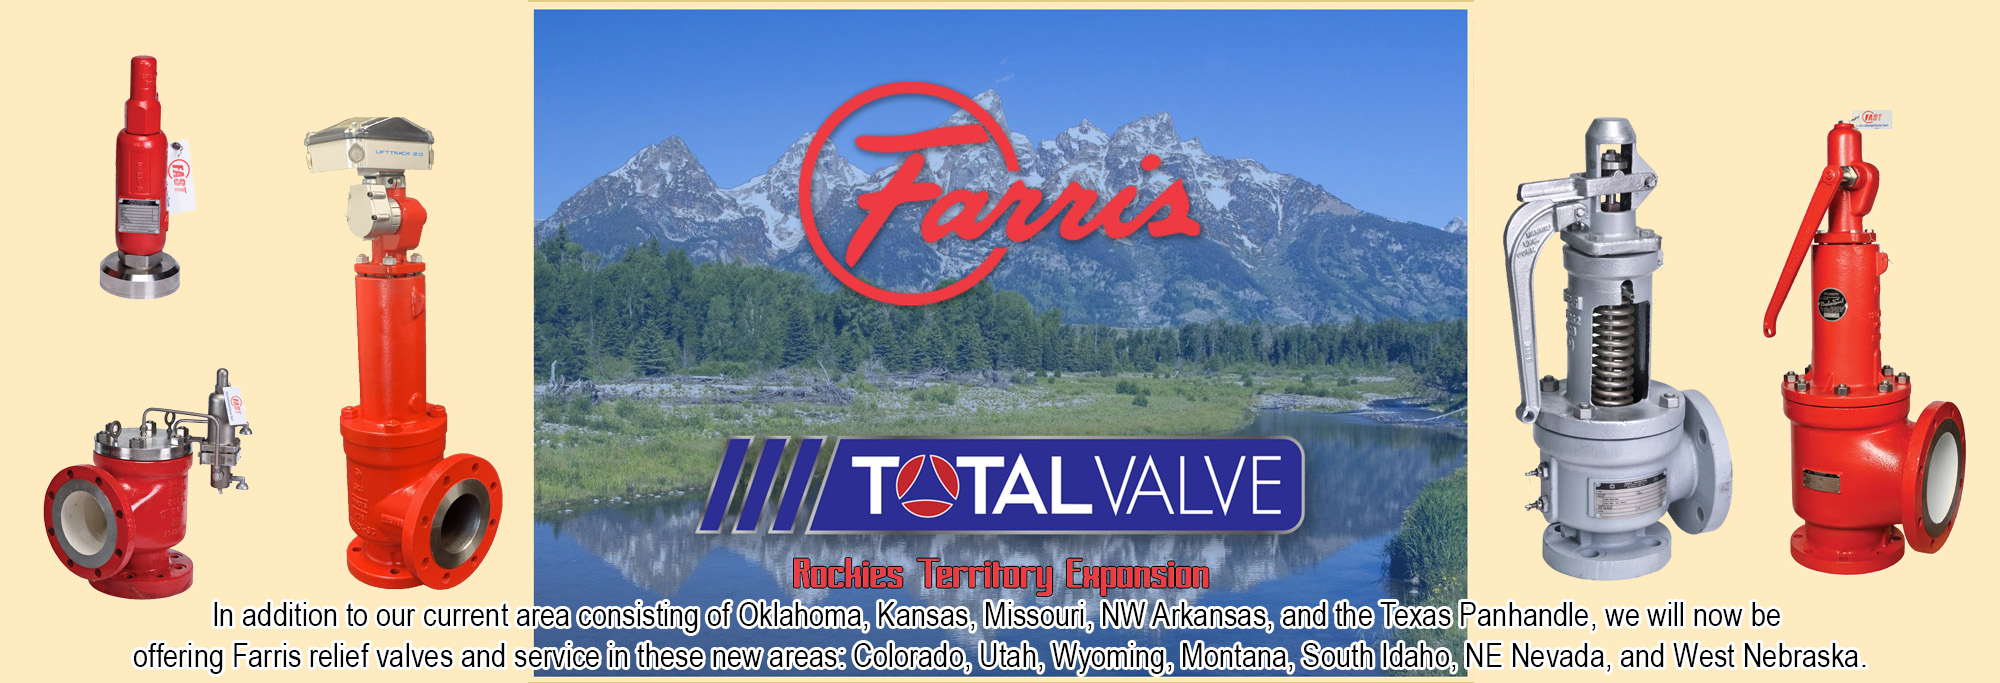 Total Valve Rockies Territory